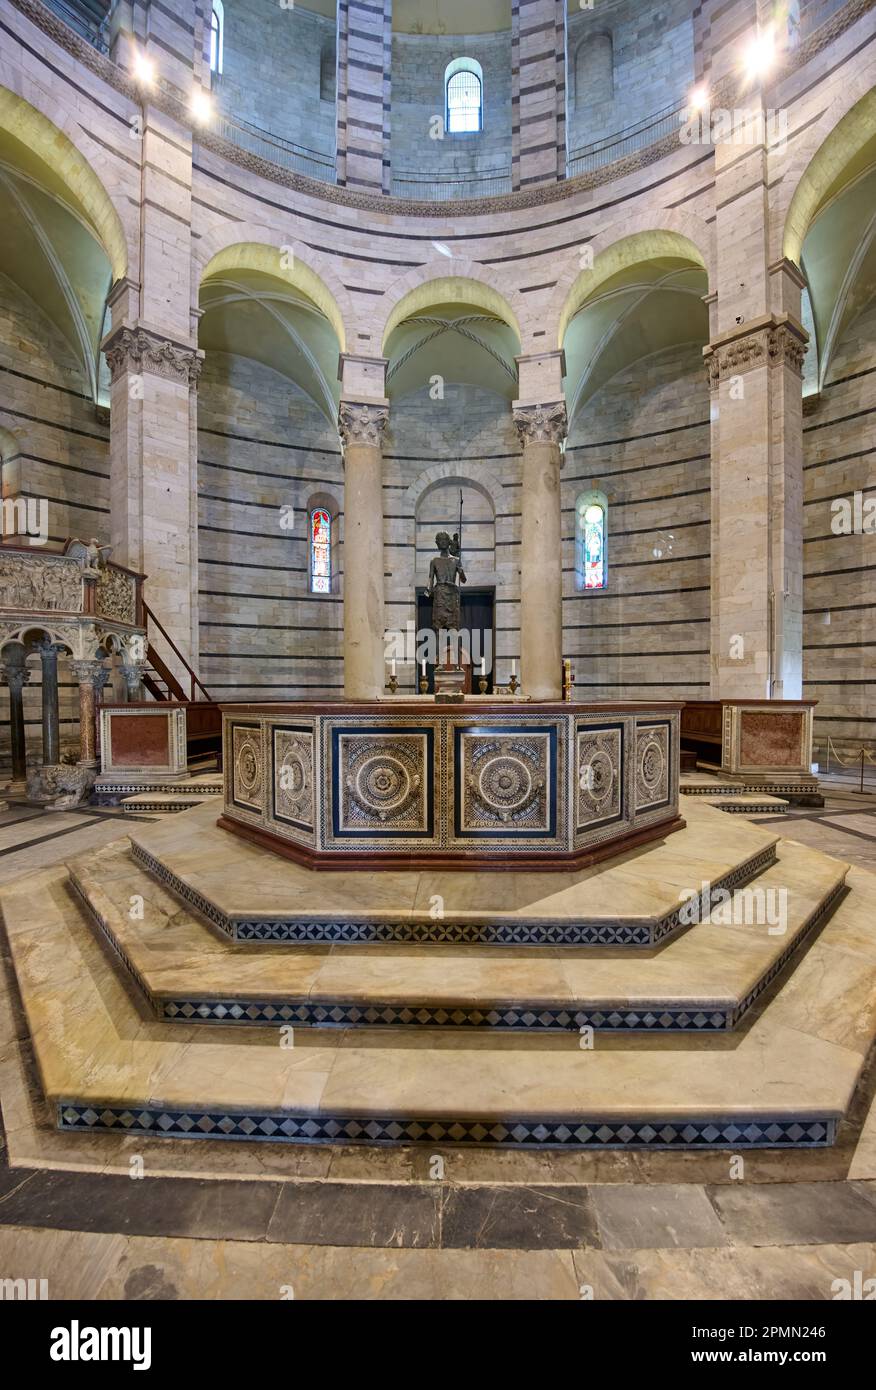 interior shot of The Baptistry of St. John, Battistero di San Giovanni, Pisa, Tuscany, Italy Stock Photo